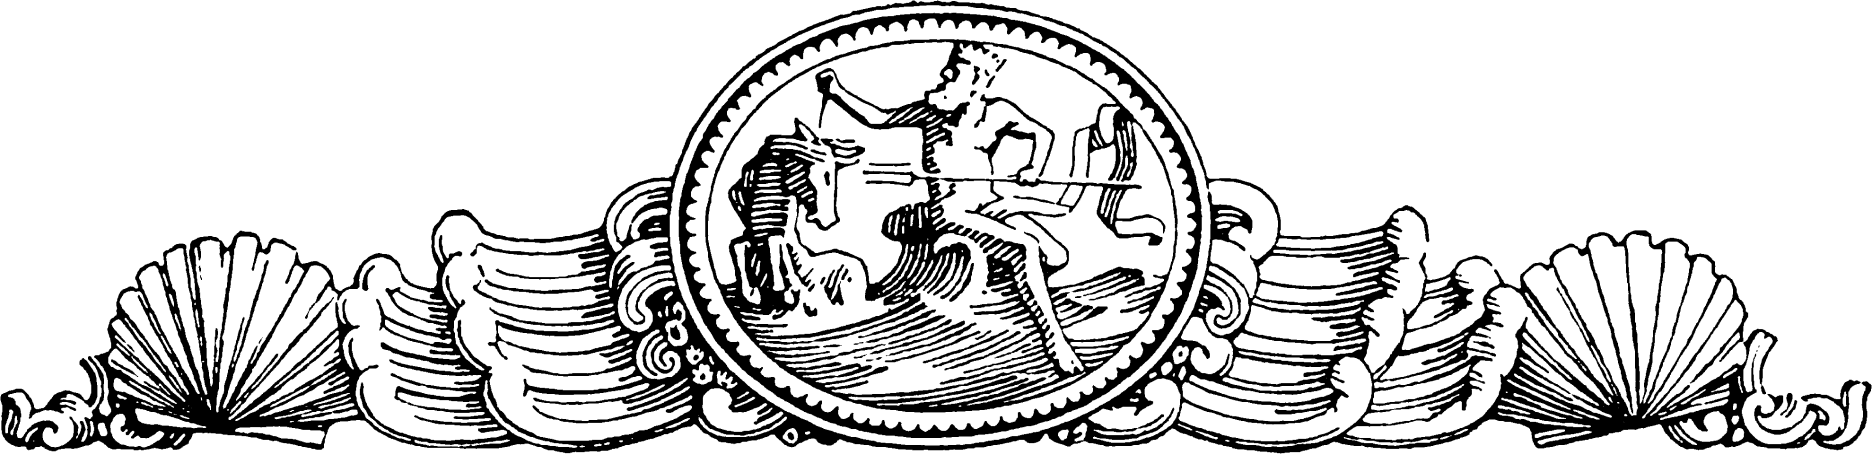 An Emblem of Poseidon